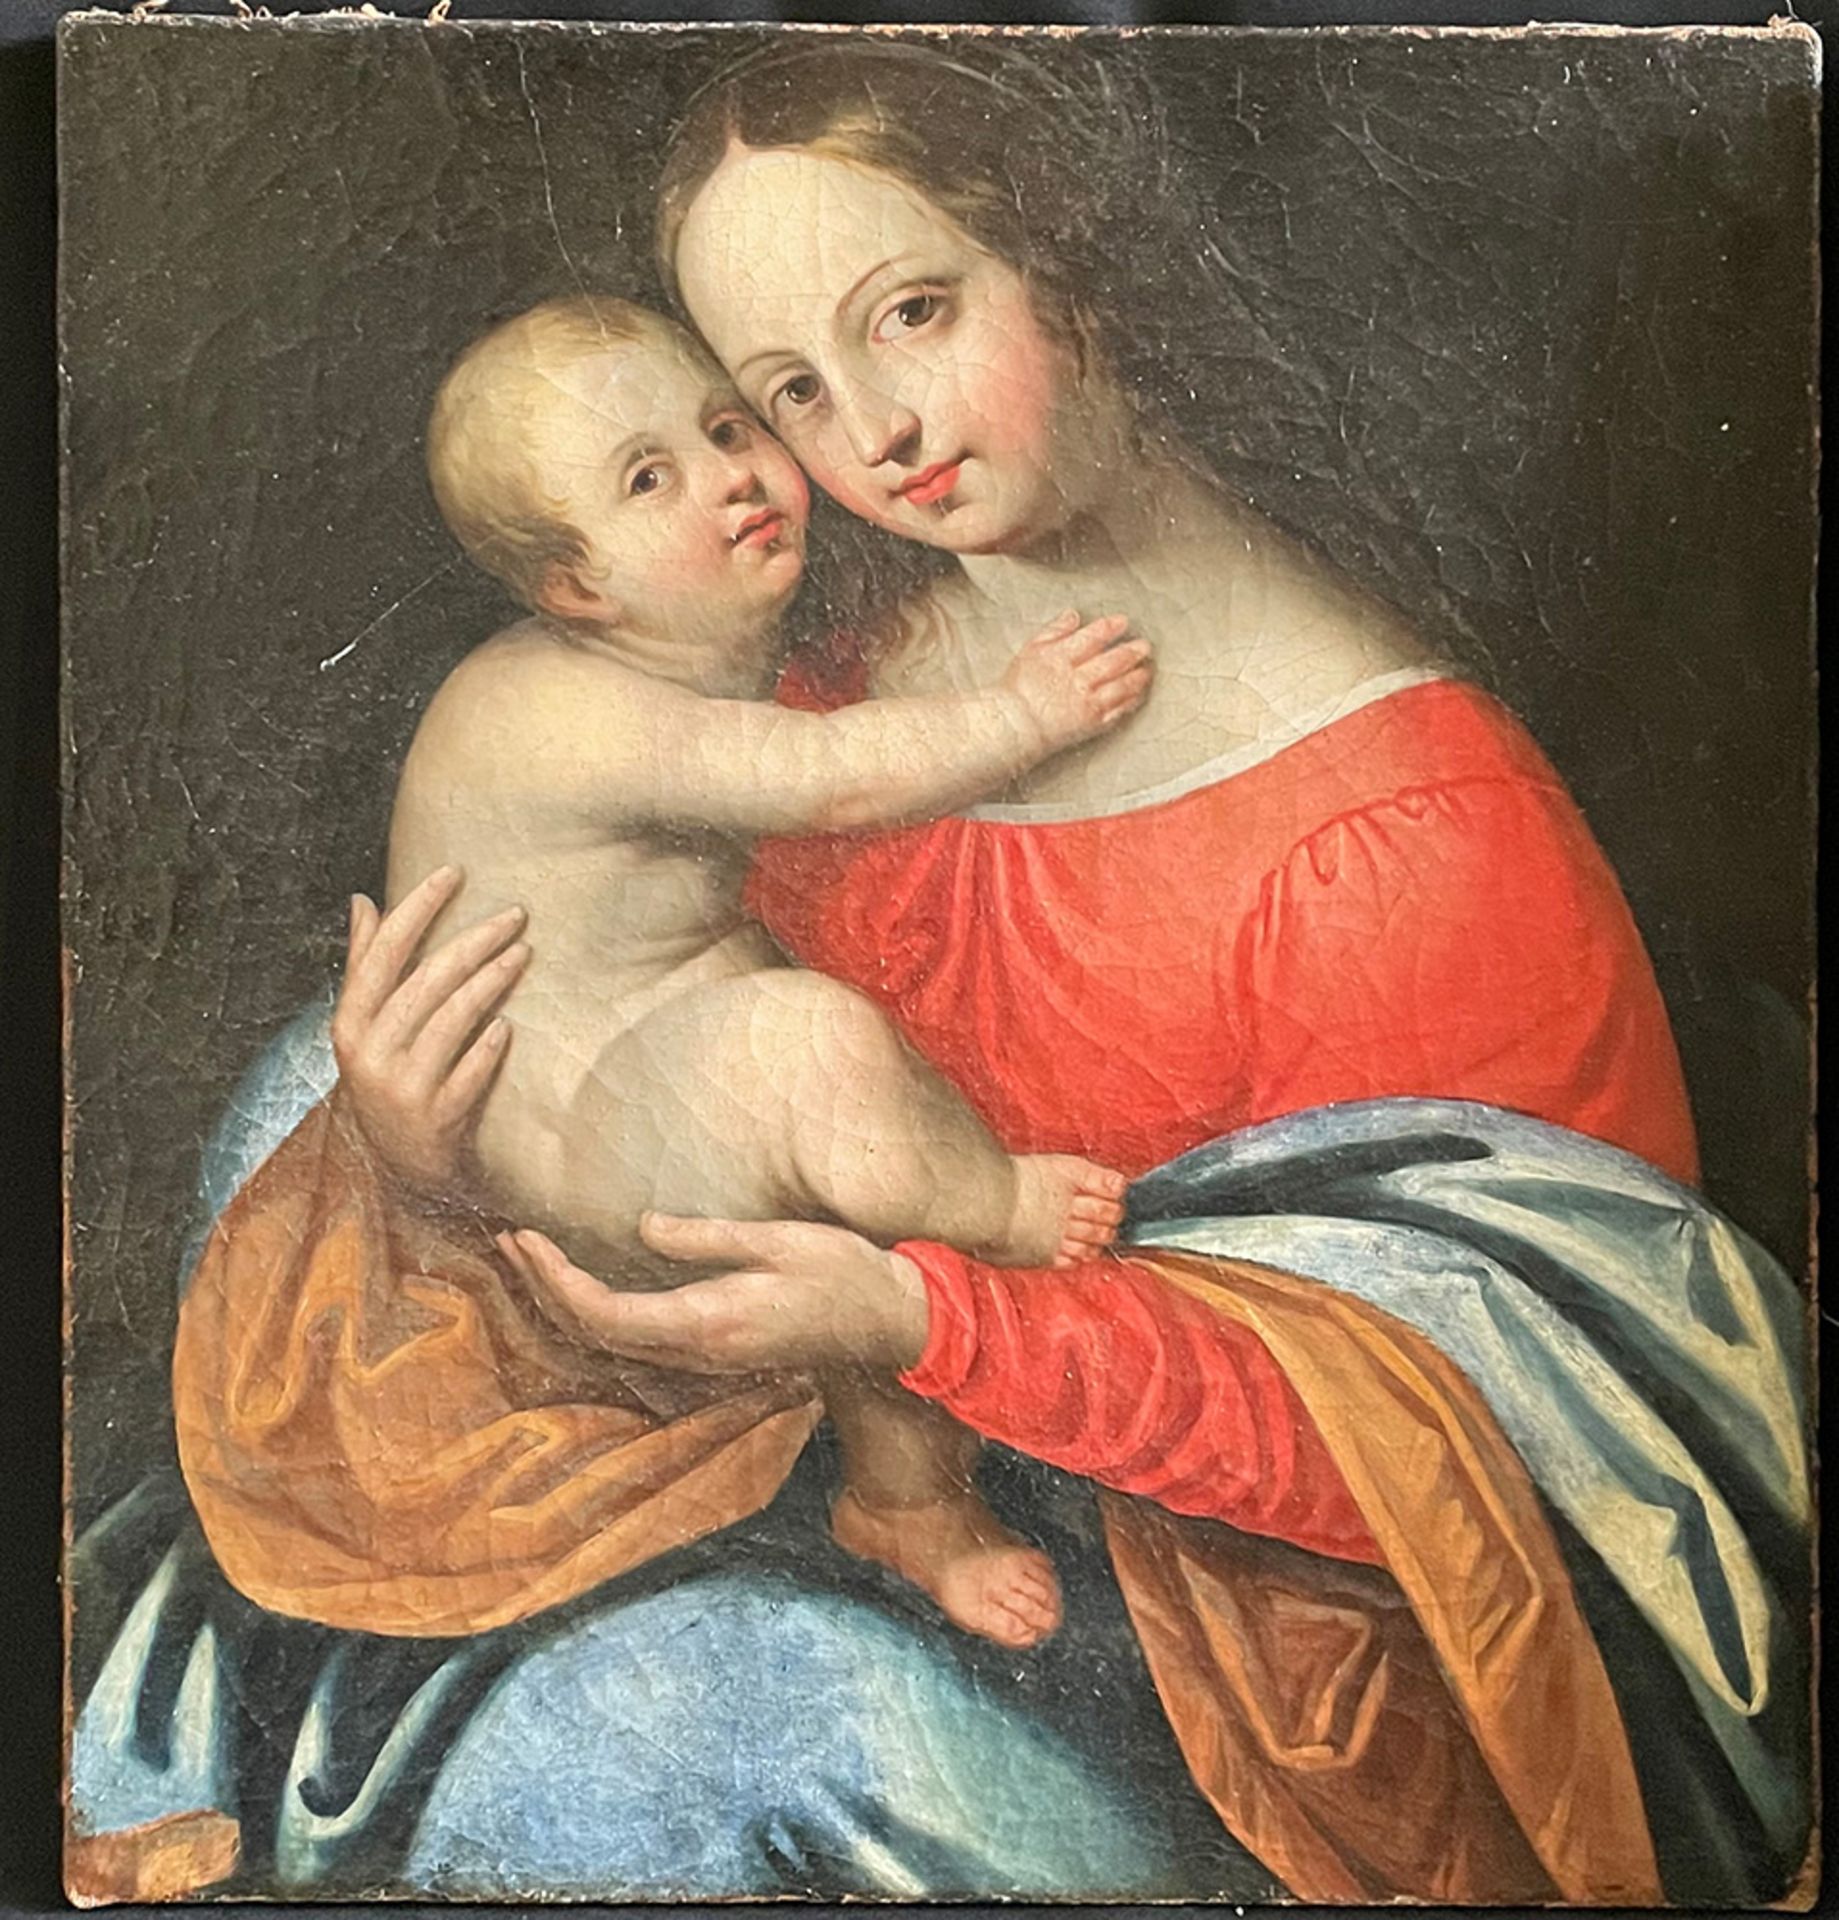 Unbekannter Maler, 17./18. Jh., Madonna mit Kind, Maria mit dem Jesuskind, Öl/Lwd, 51 x 45 cm.